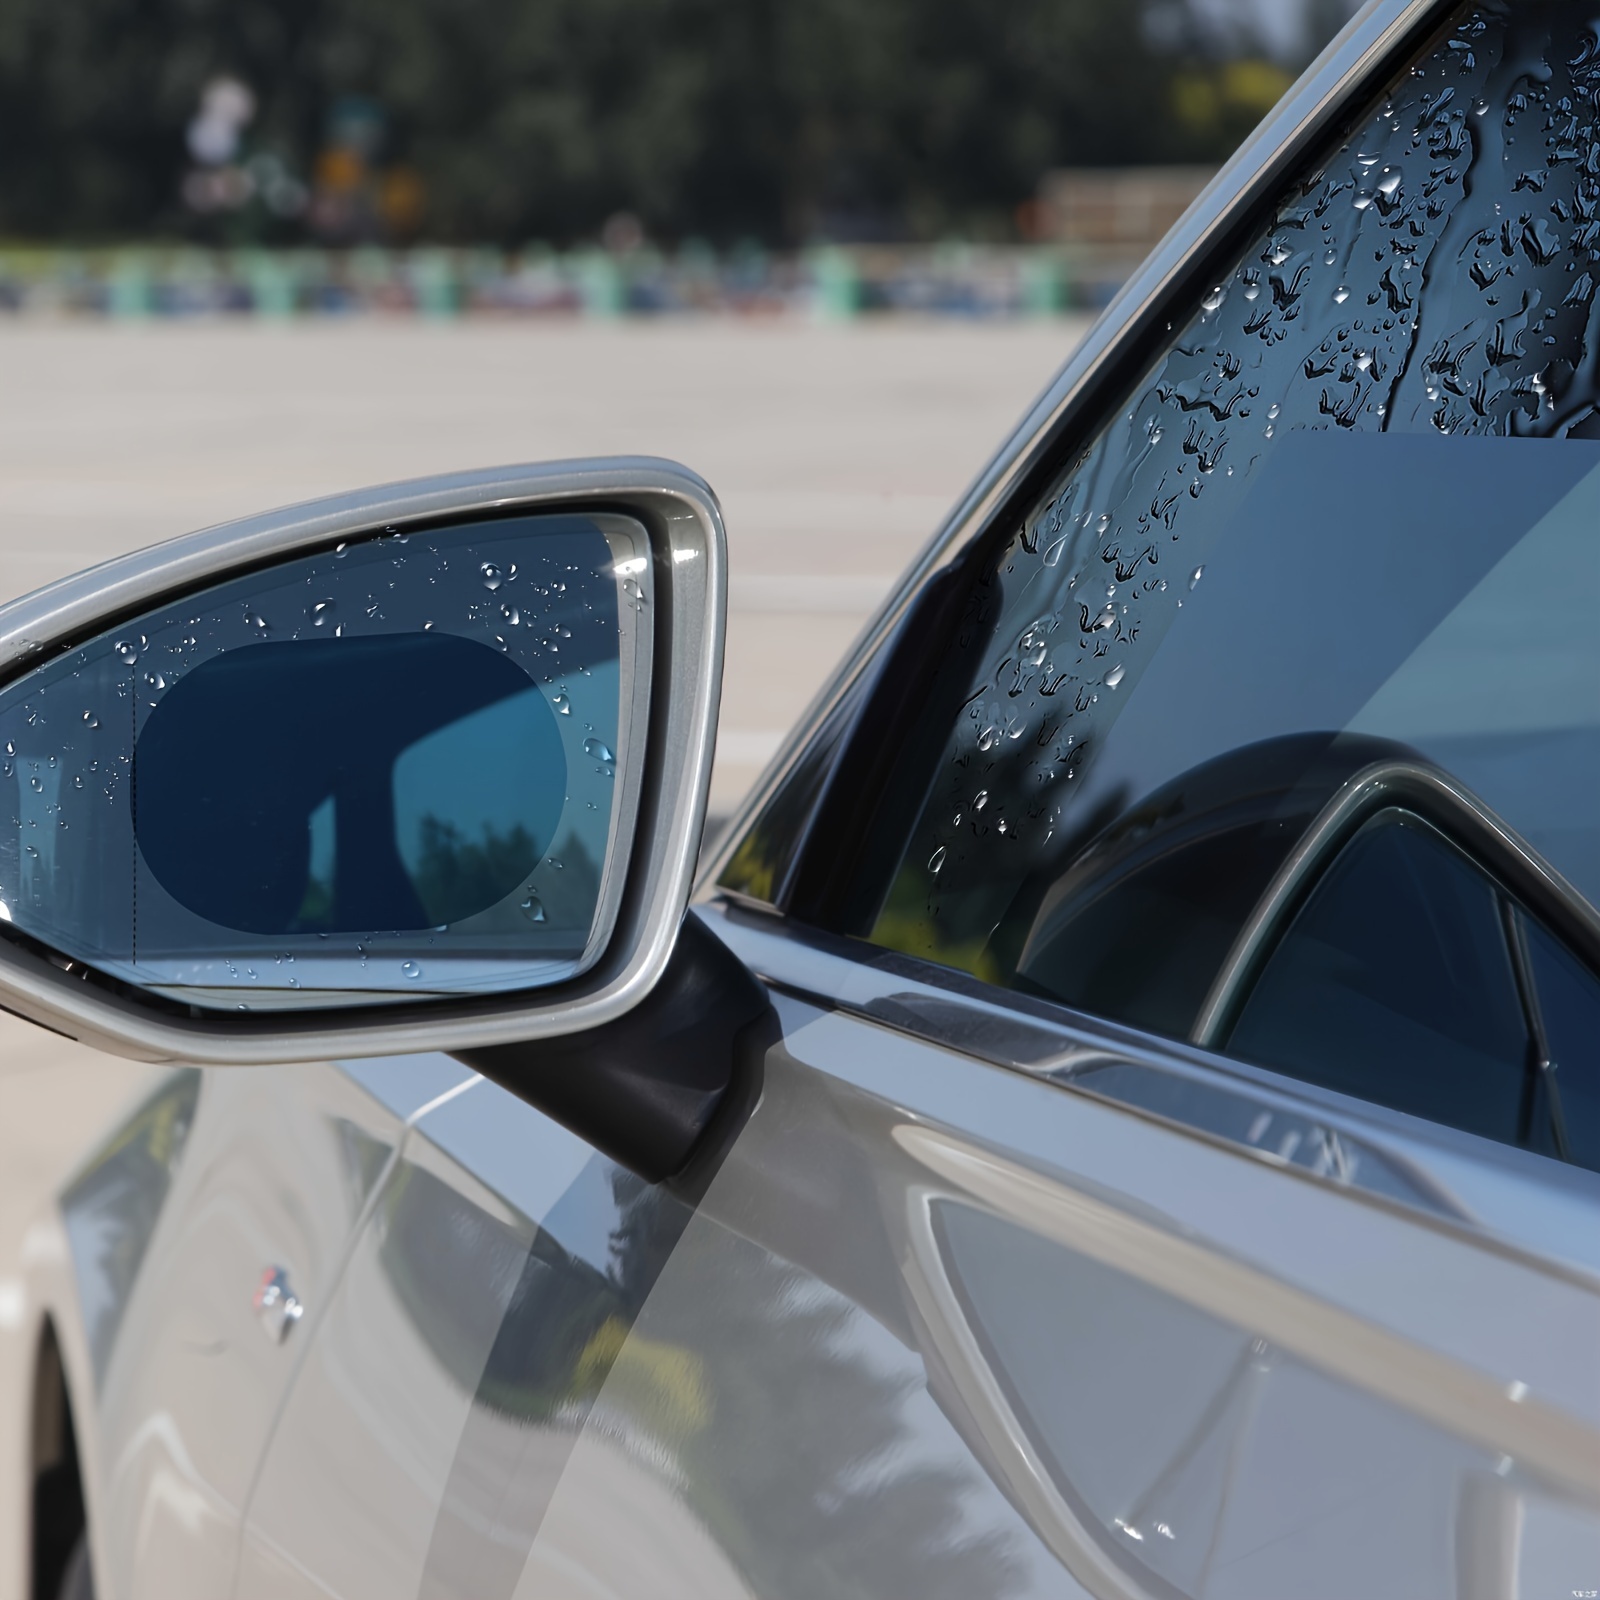 Auto Seitenfenster Regenschutz Anti Beschlag Rearview Spiegel Film